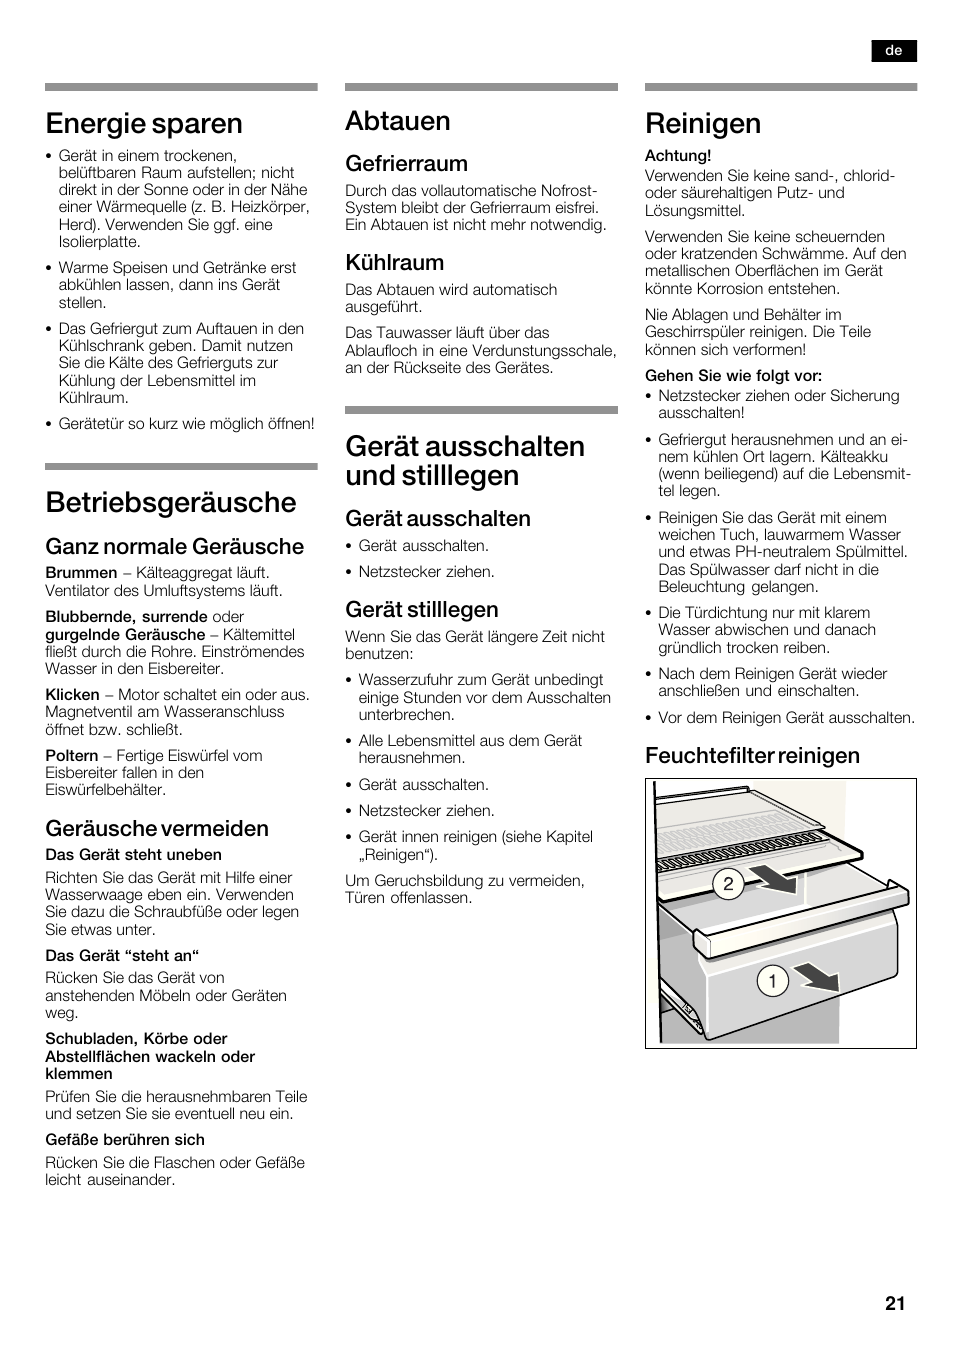 Energie sparen, Betriebsgeräusche, Gerät ausschalten und stilllegen | Bosch  KAD62S51 Réfrigérateur-congélateur américain Premium User Manual | Page 21  / 114